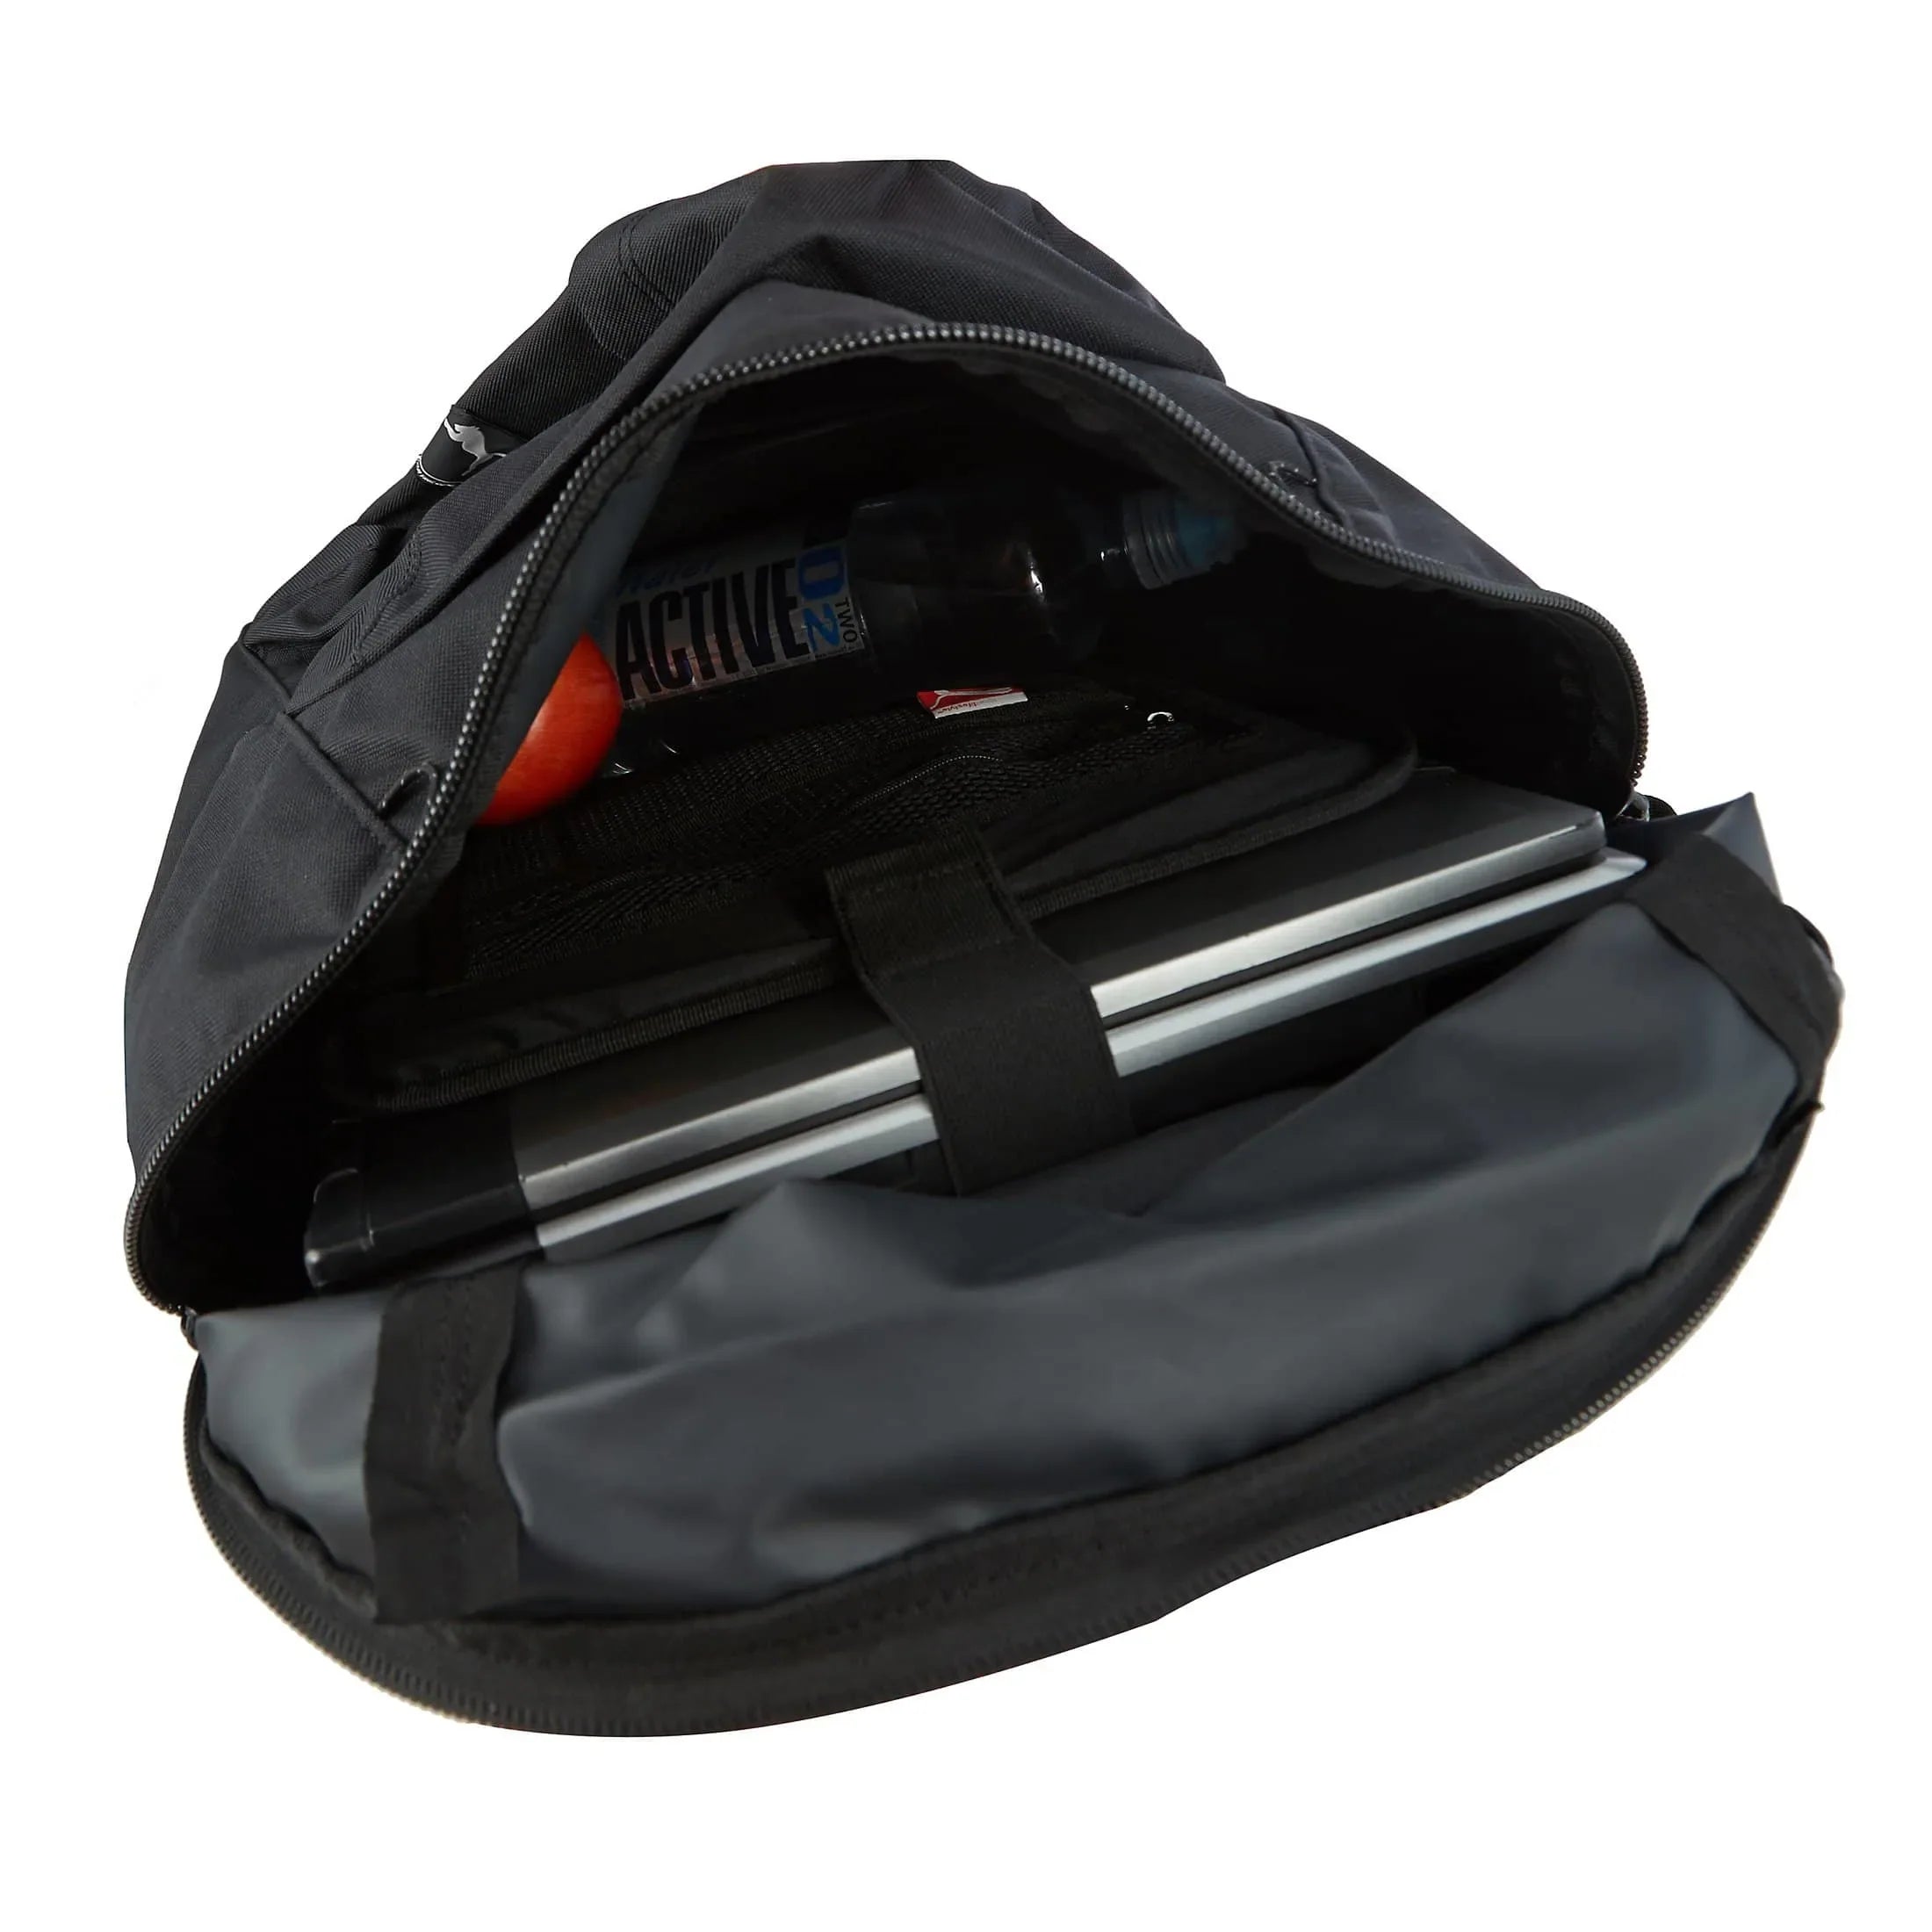 Puma Foundation Backpack sac à dos avec compartiment pour ordinateur portable 45 cm - bike red-peacoat